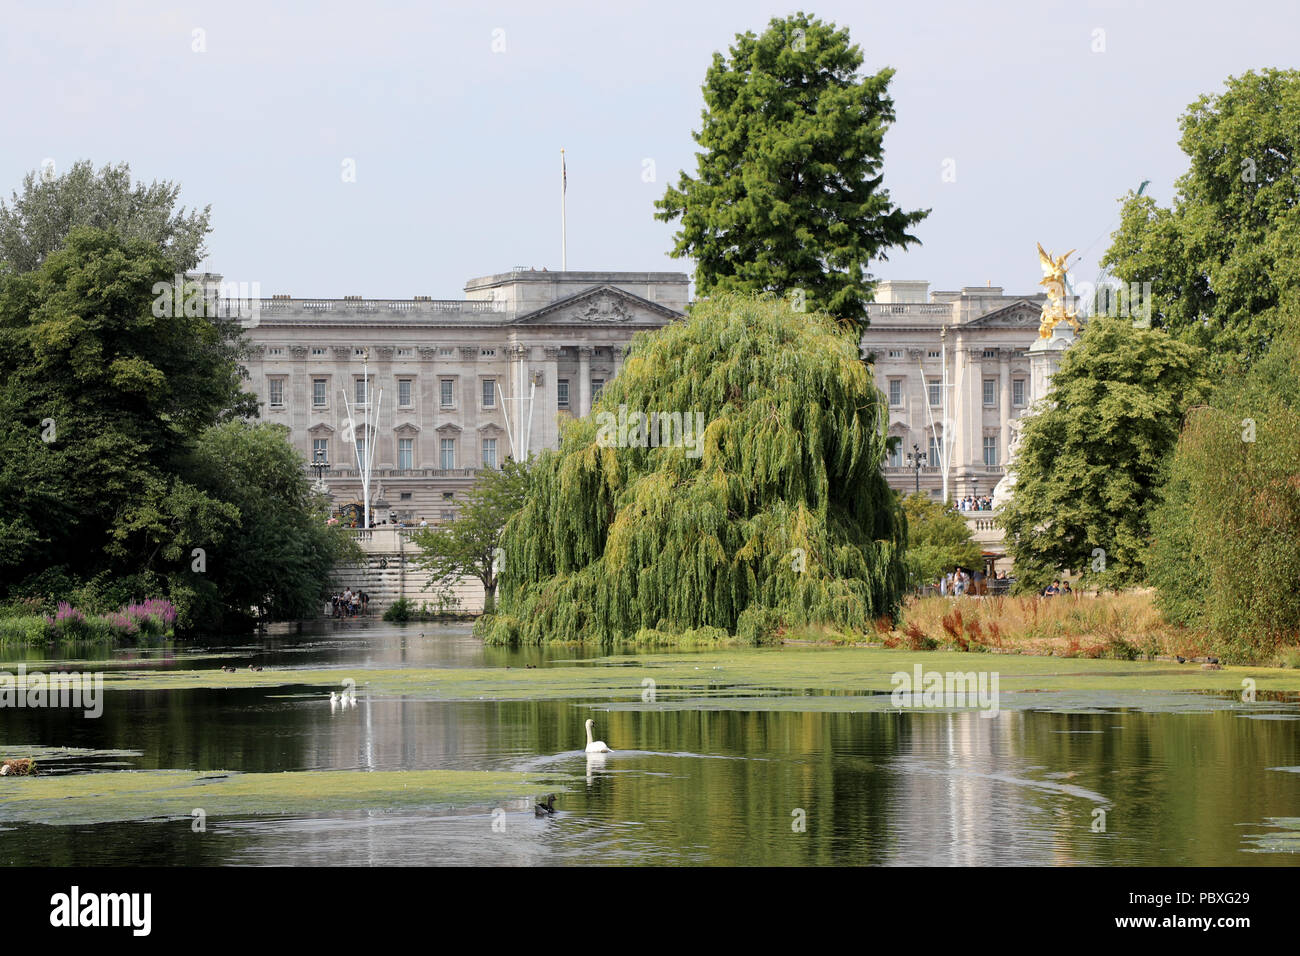 London / UK - 26 Luglio 2018: Vista di Buckingham Palace la casa del monarca britannico, attraverso gli alberi di St James Park nel centro di Londra Foto Stock